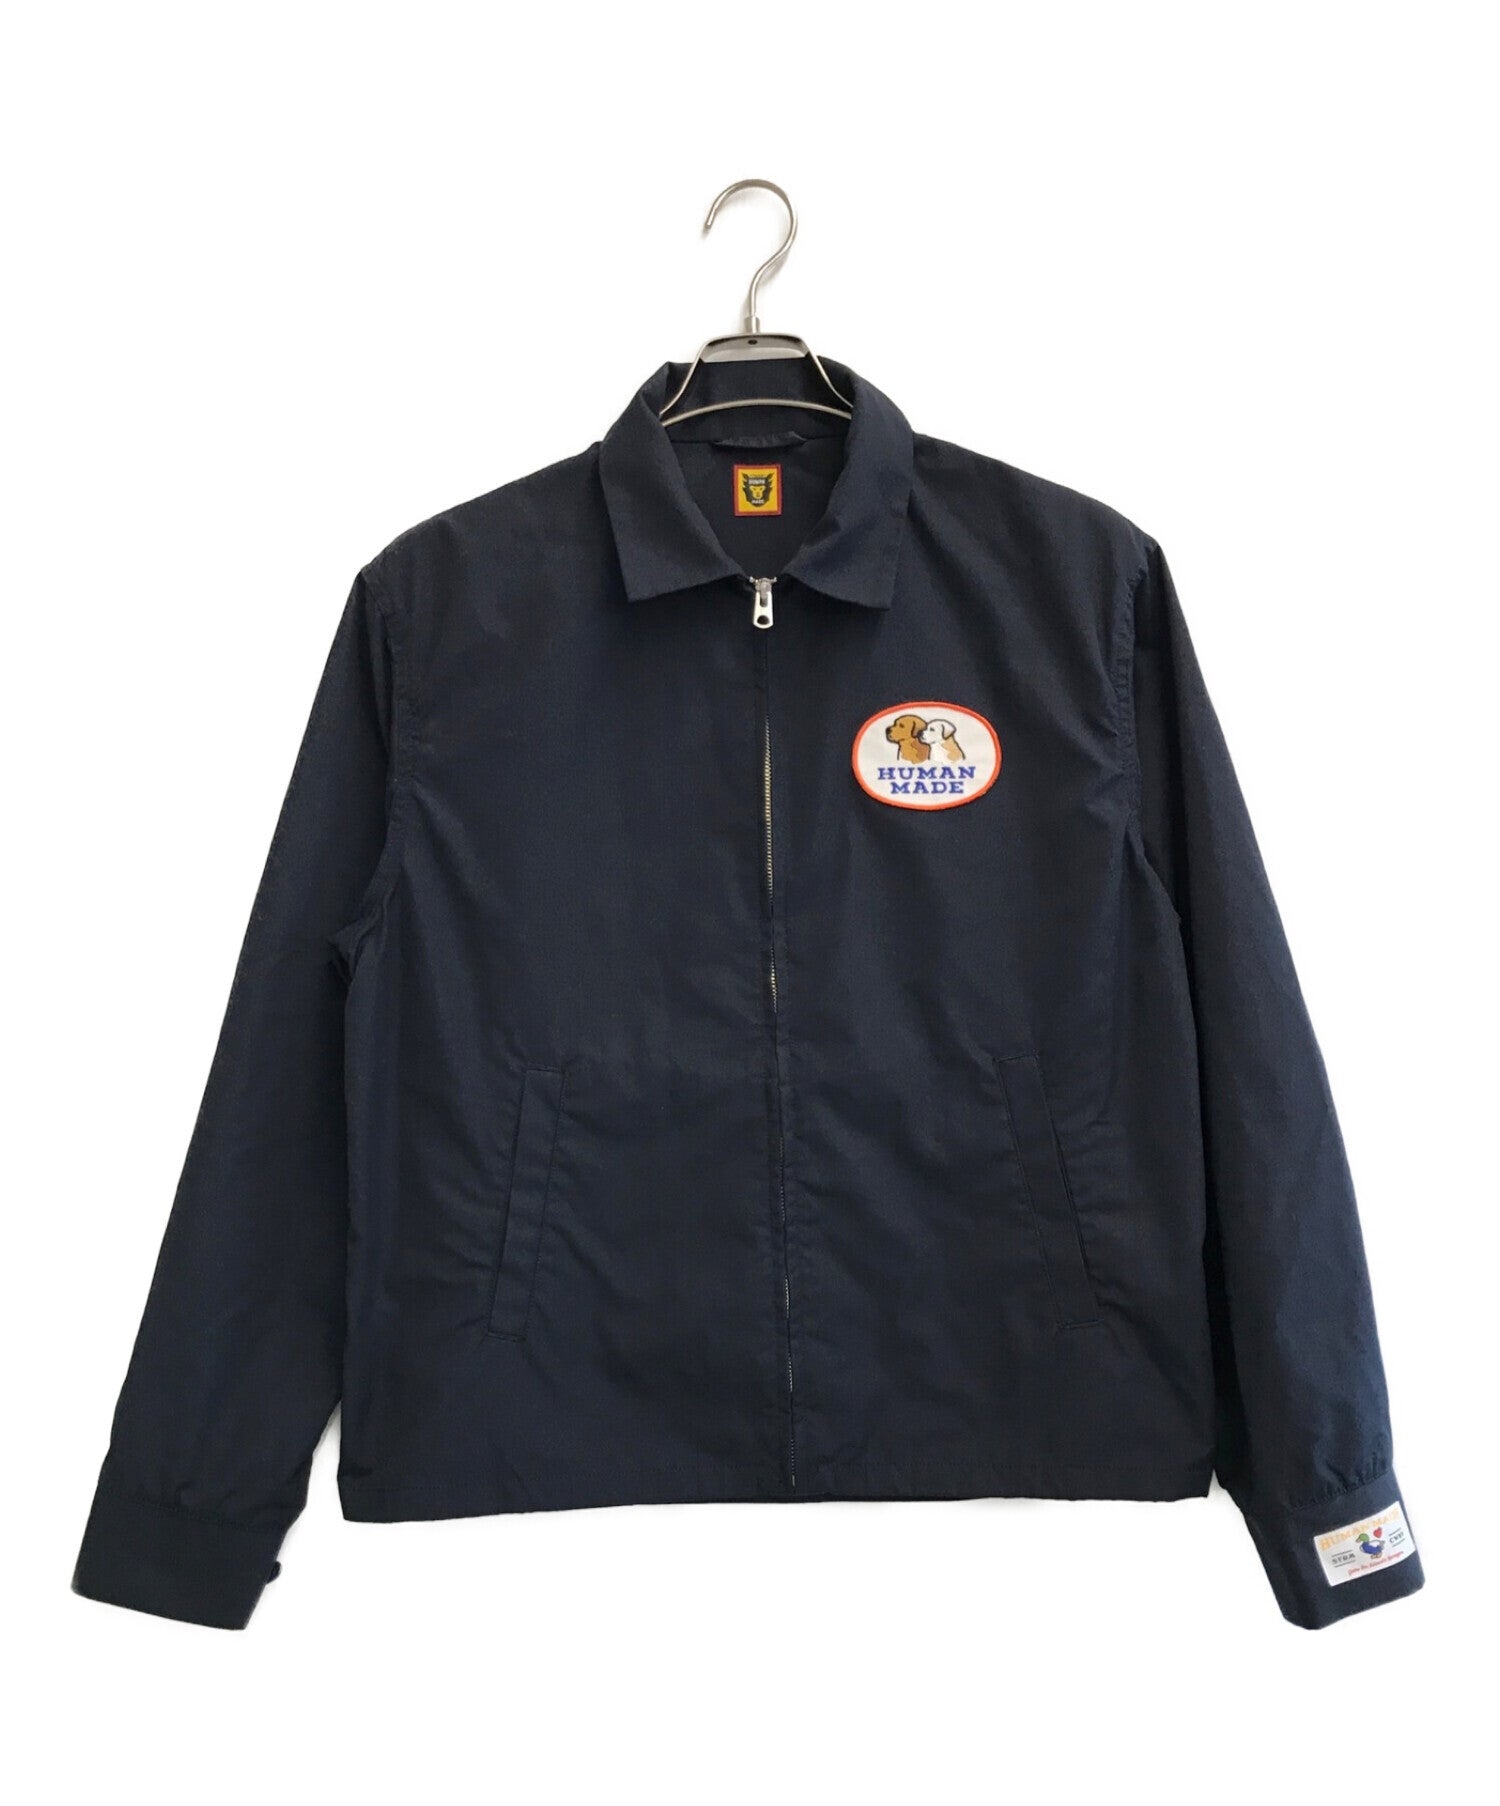 6,900円久遠 Gobelins short drizzler jacket